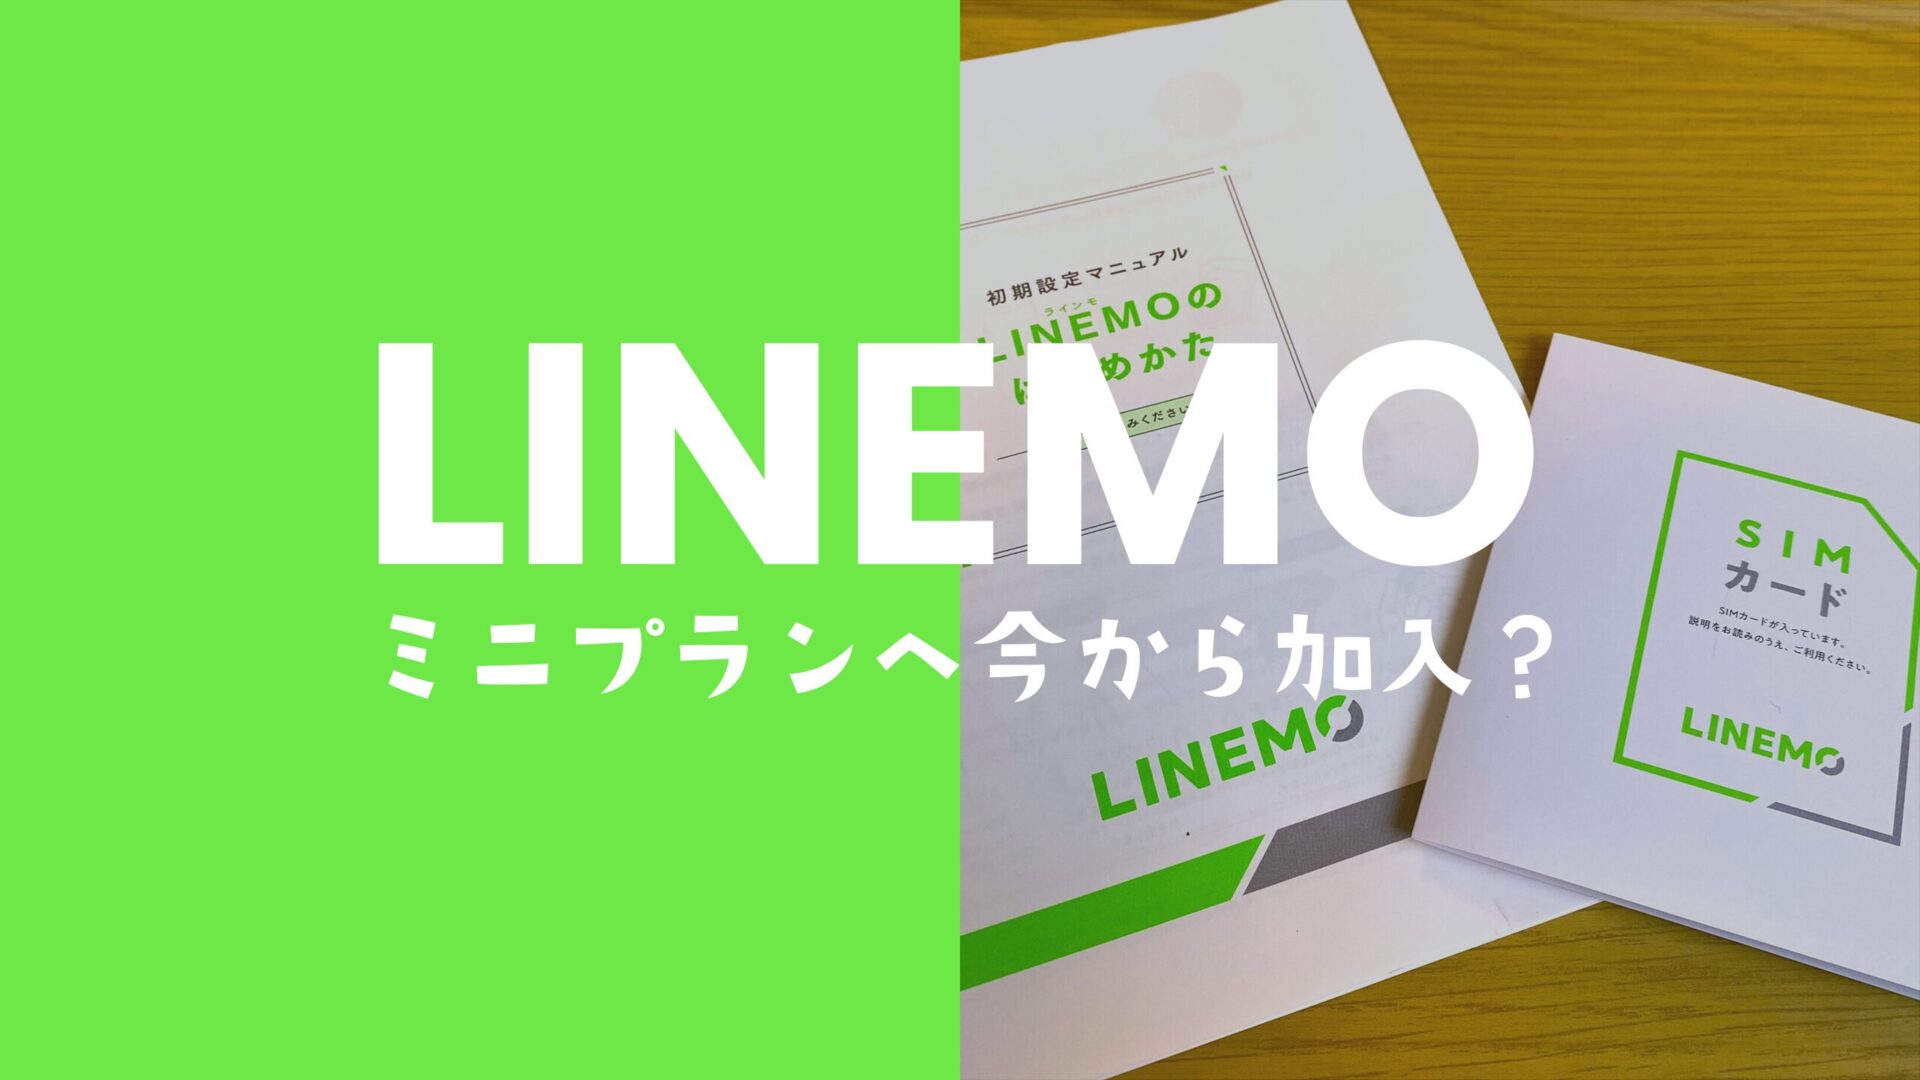 LINEMO(ラインモ)のミニプランを今から契約申込したら最安で使える？のサムネイル画像